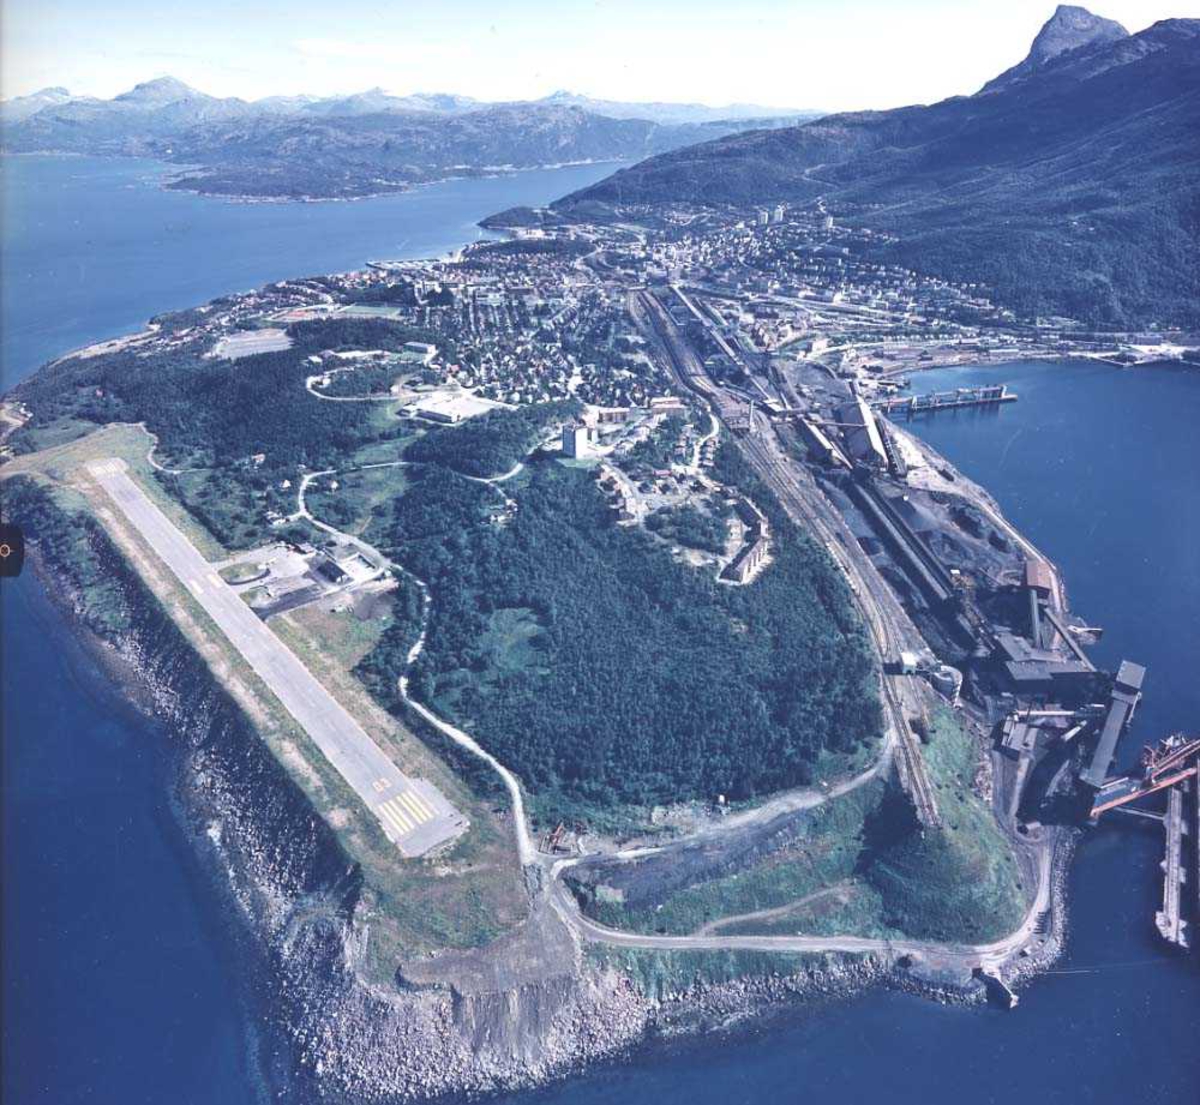 Lufthavn/Flyplass. ENNK-NVK. Narvik. Oversiktsbilde over flyplassen, topografien rundt og byen i bakgrunnen.
Baneretning/RWY 01/19.